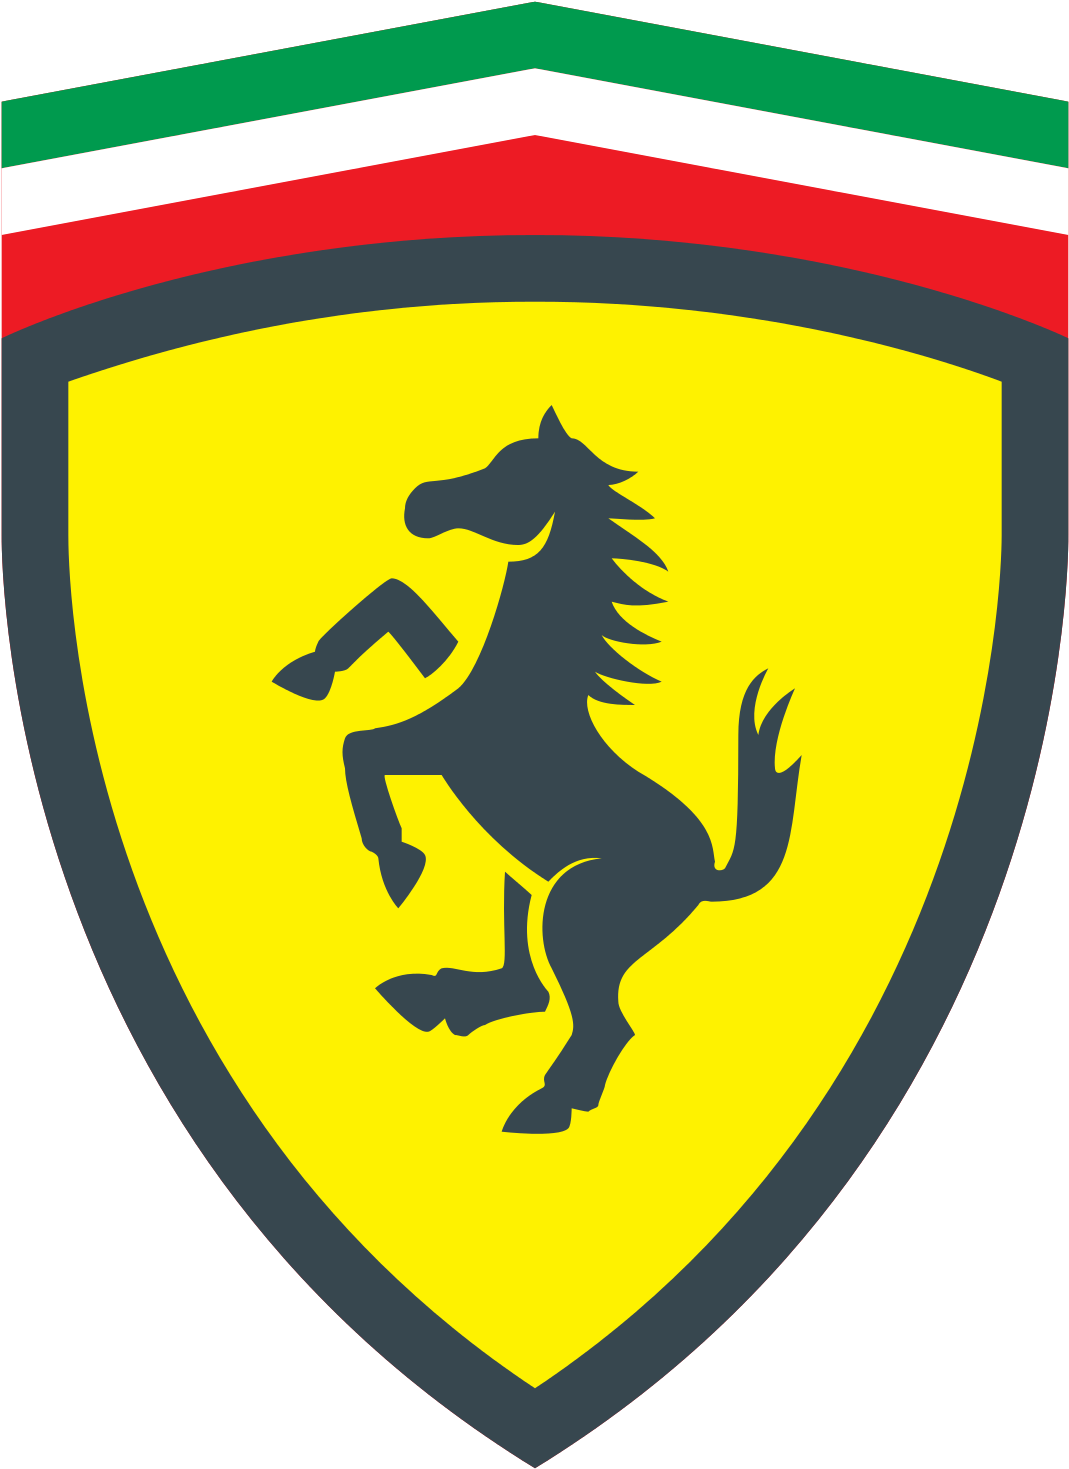 Ferrari Prancing Horse Logo PNG